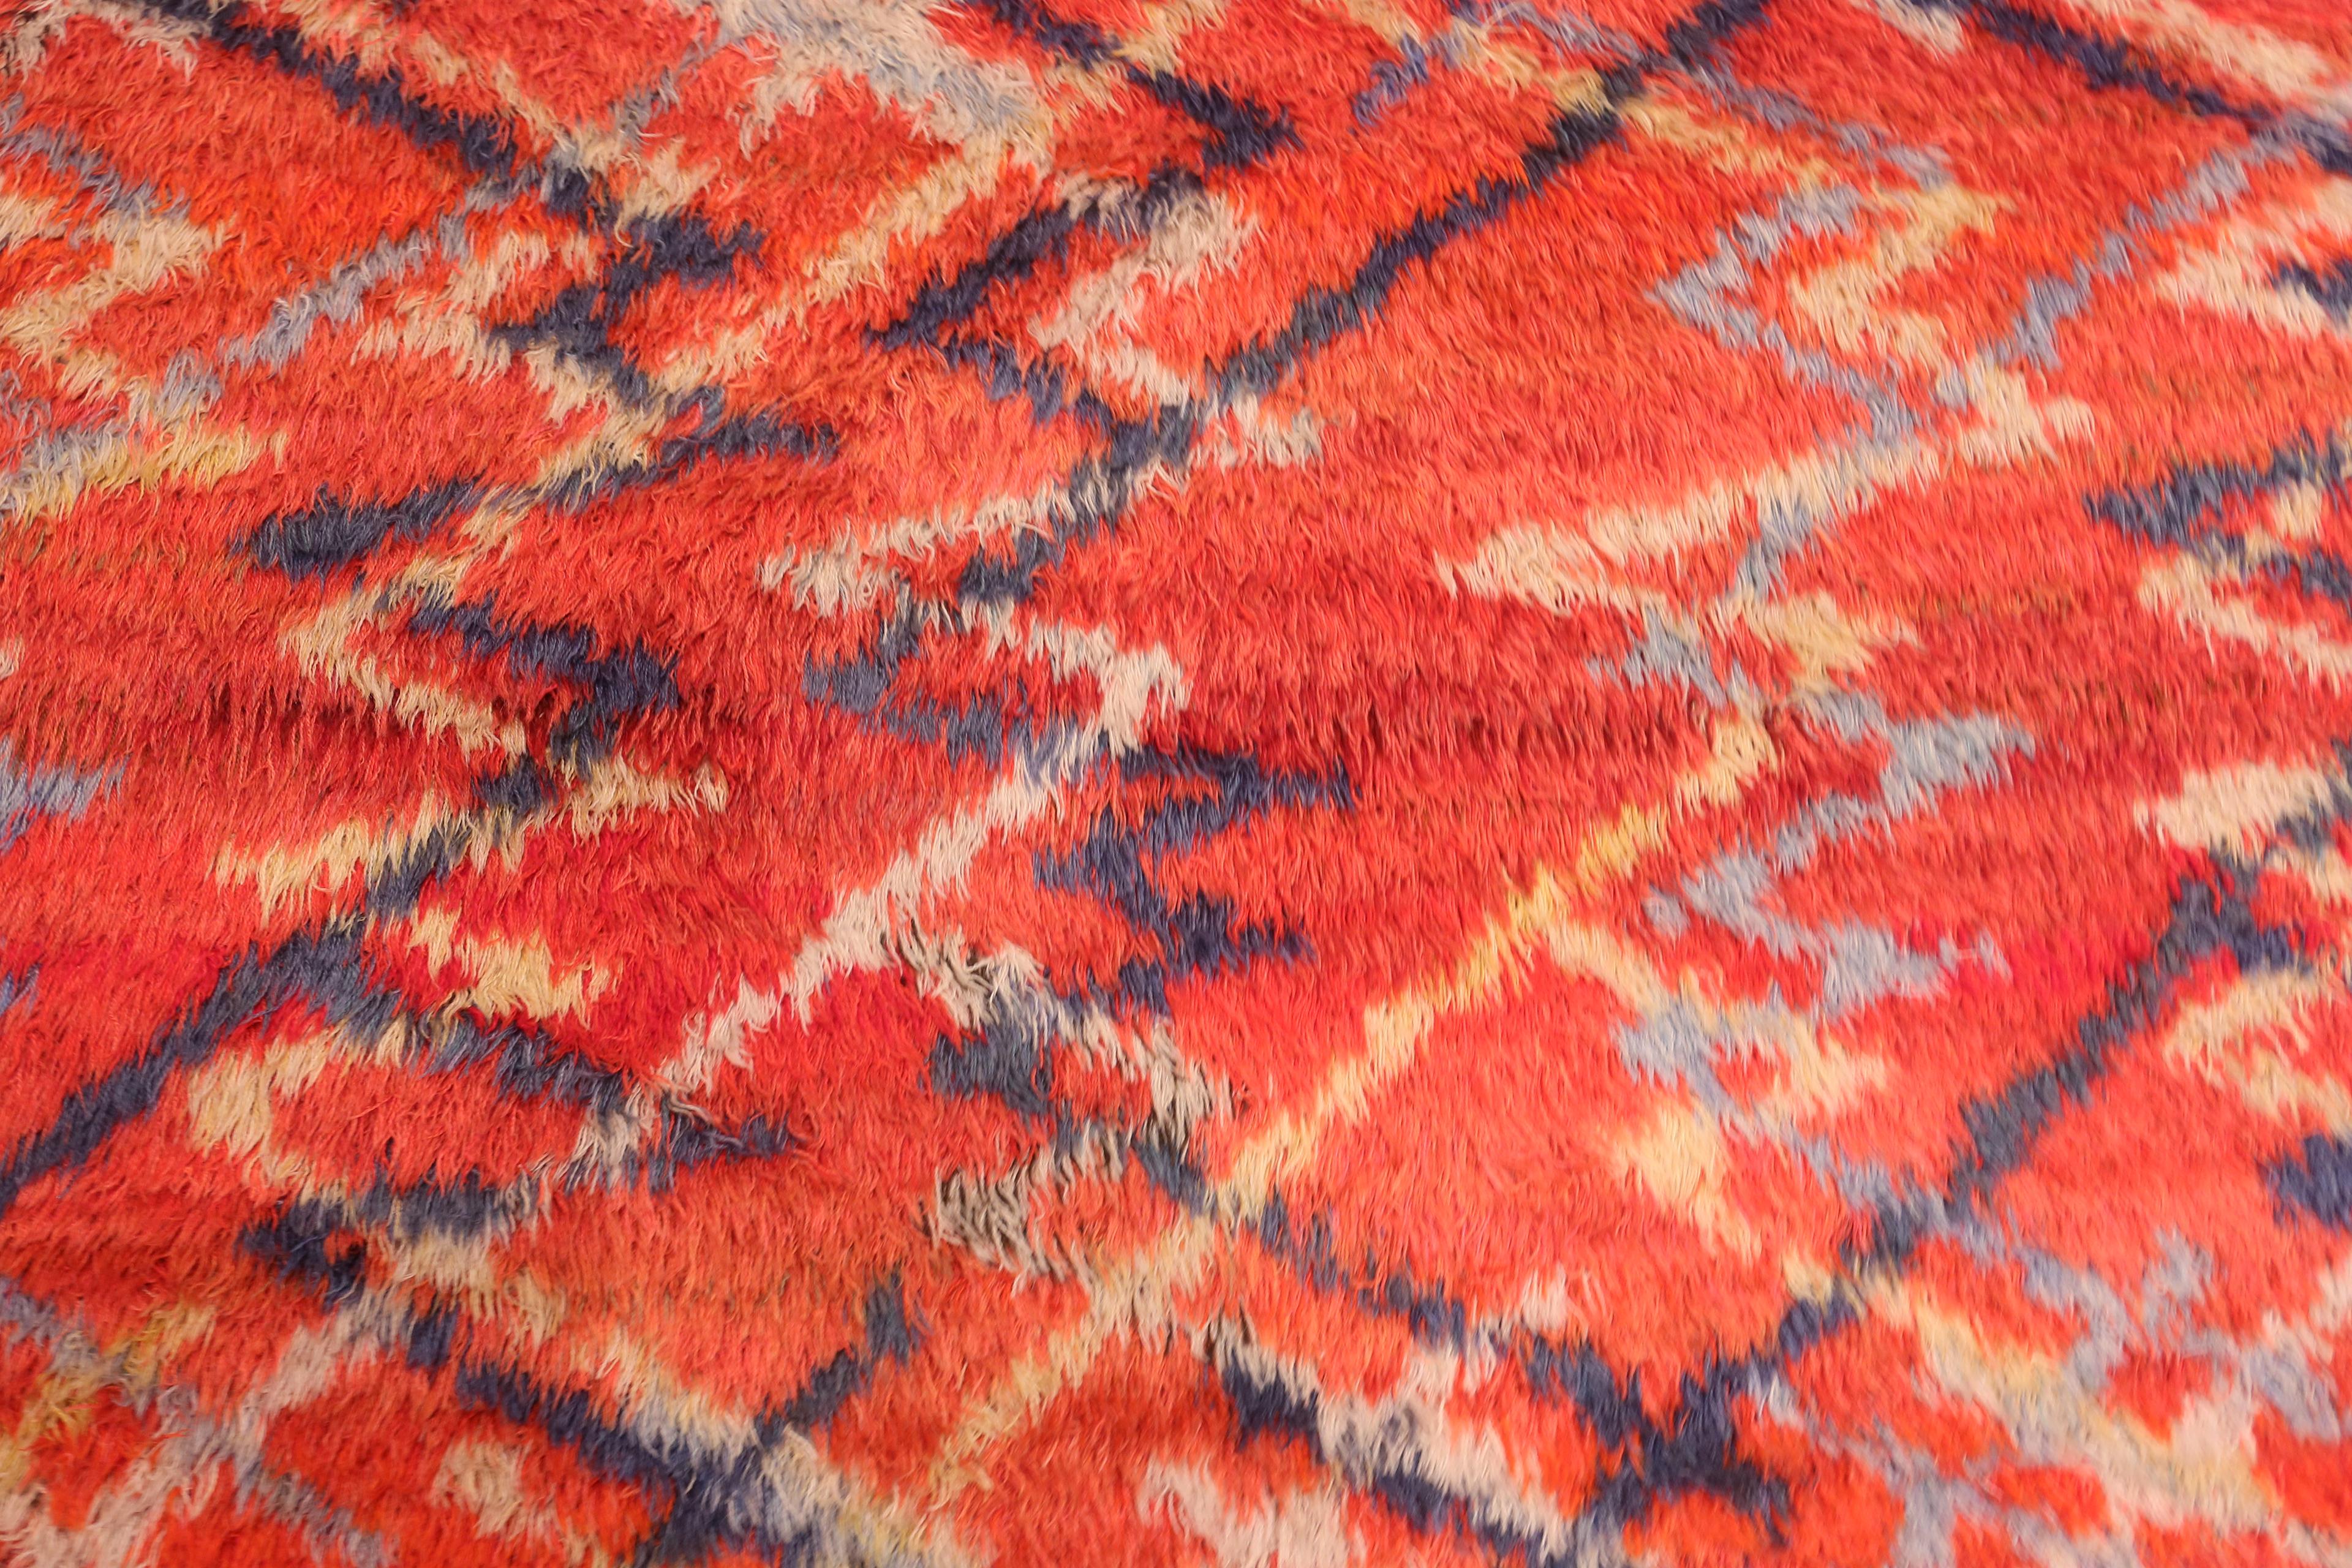 Magnifique tapis scandinave Vintage par Barbro Nilsson pour Marta Maas, Pays d'origine : Scandinavie, Circa Date : Milieu du 20ème siècle - Taille : 3 ft 6 in x 4 ft 10 in (1.07 m x 1.47 m).